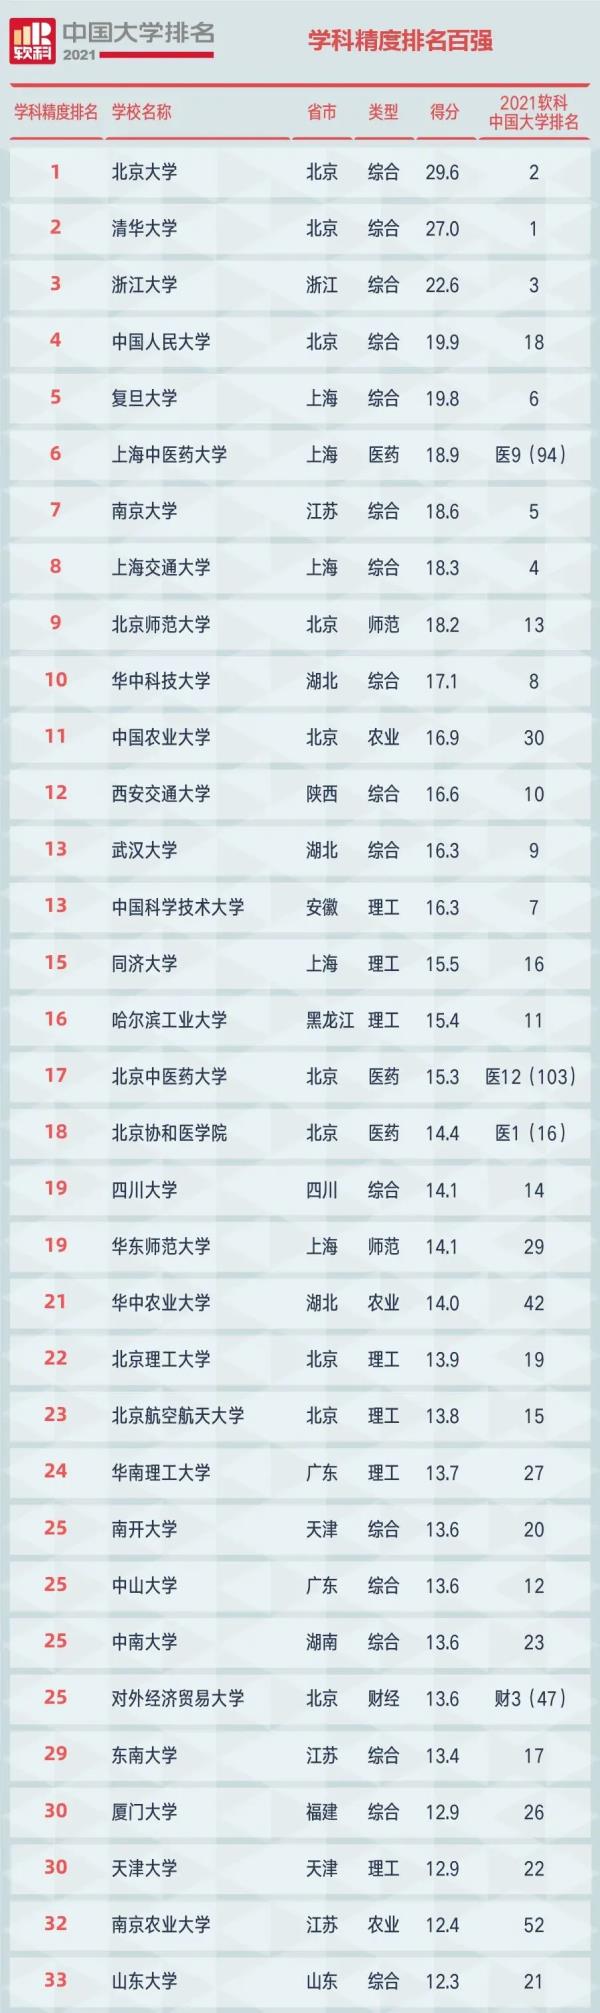 2021中国大学排行榜